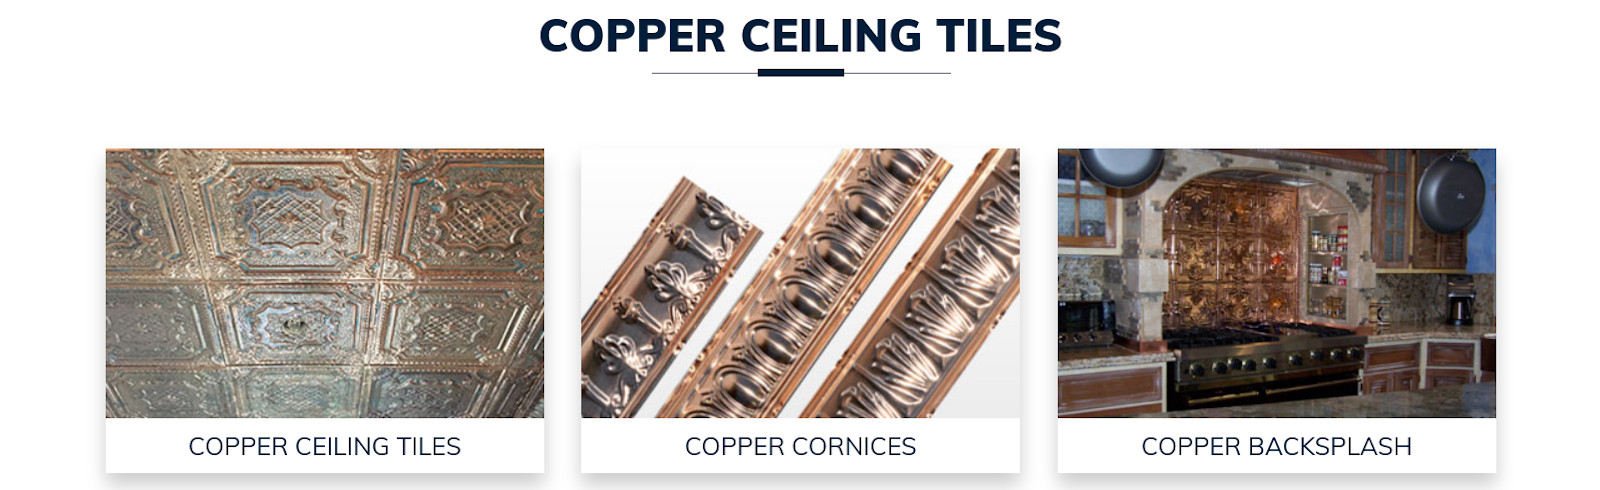 Sale copper ceiling tiles